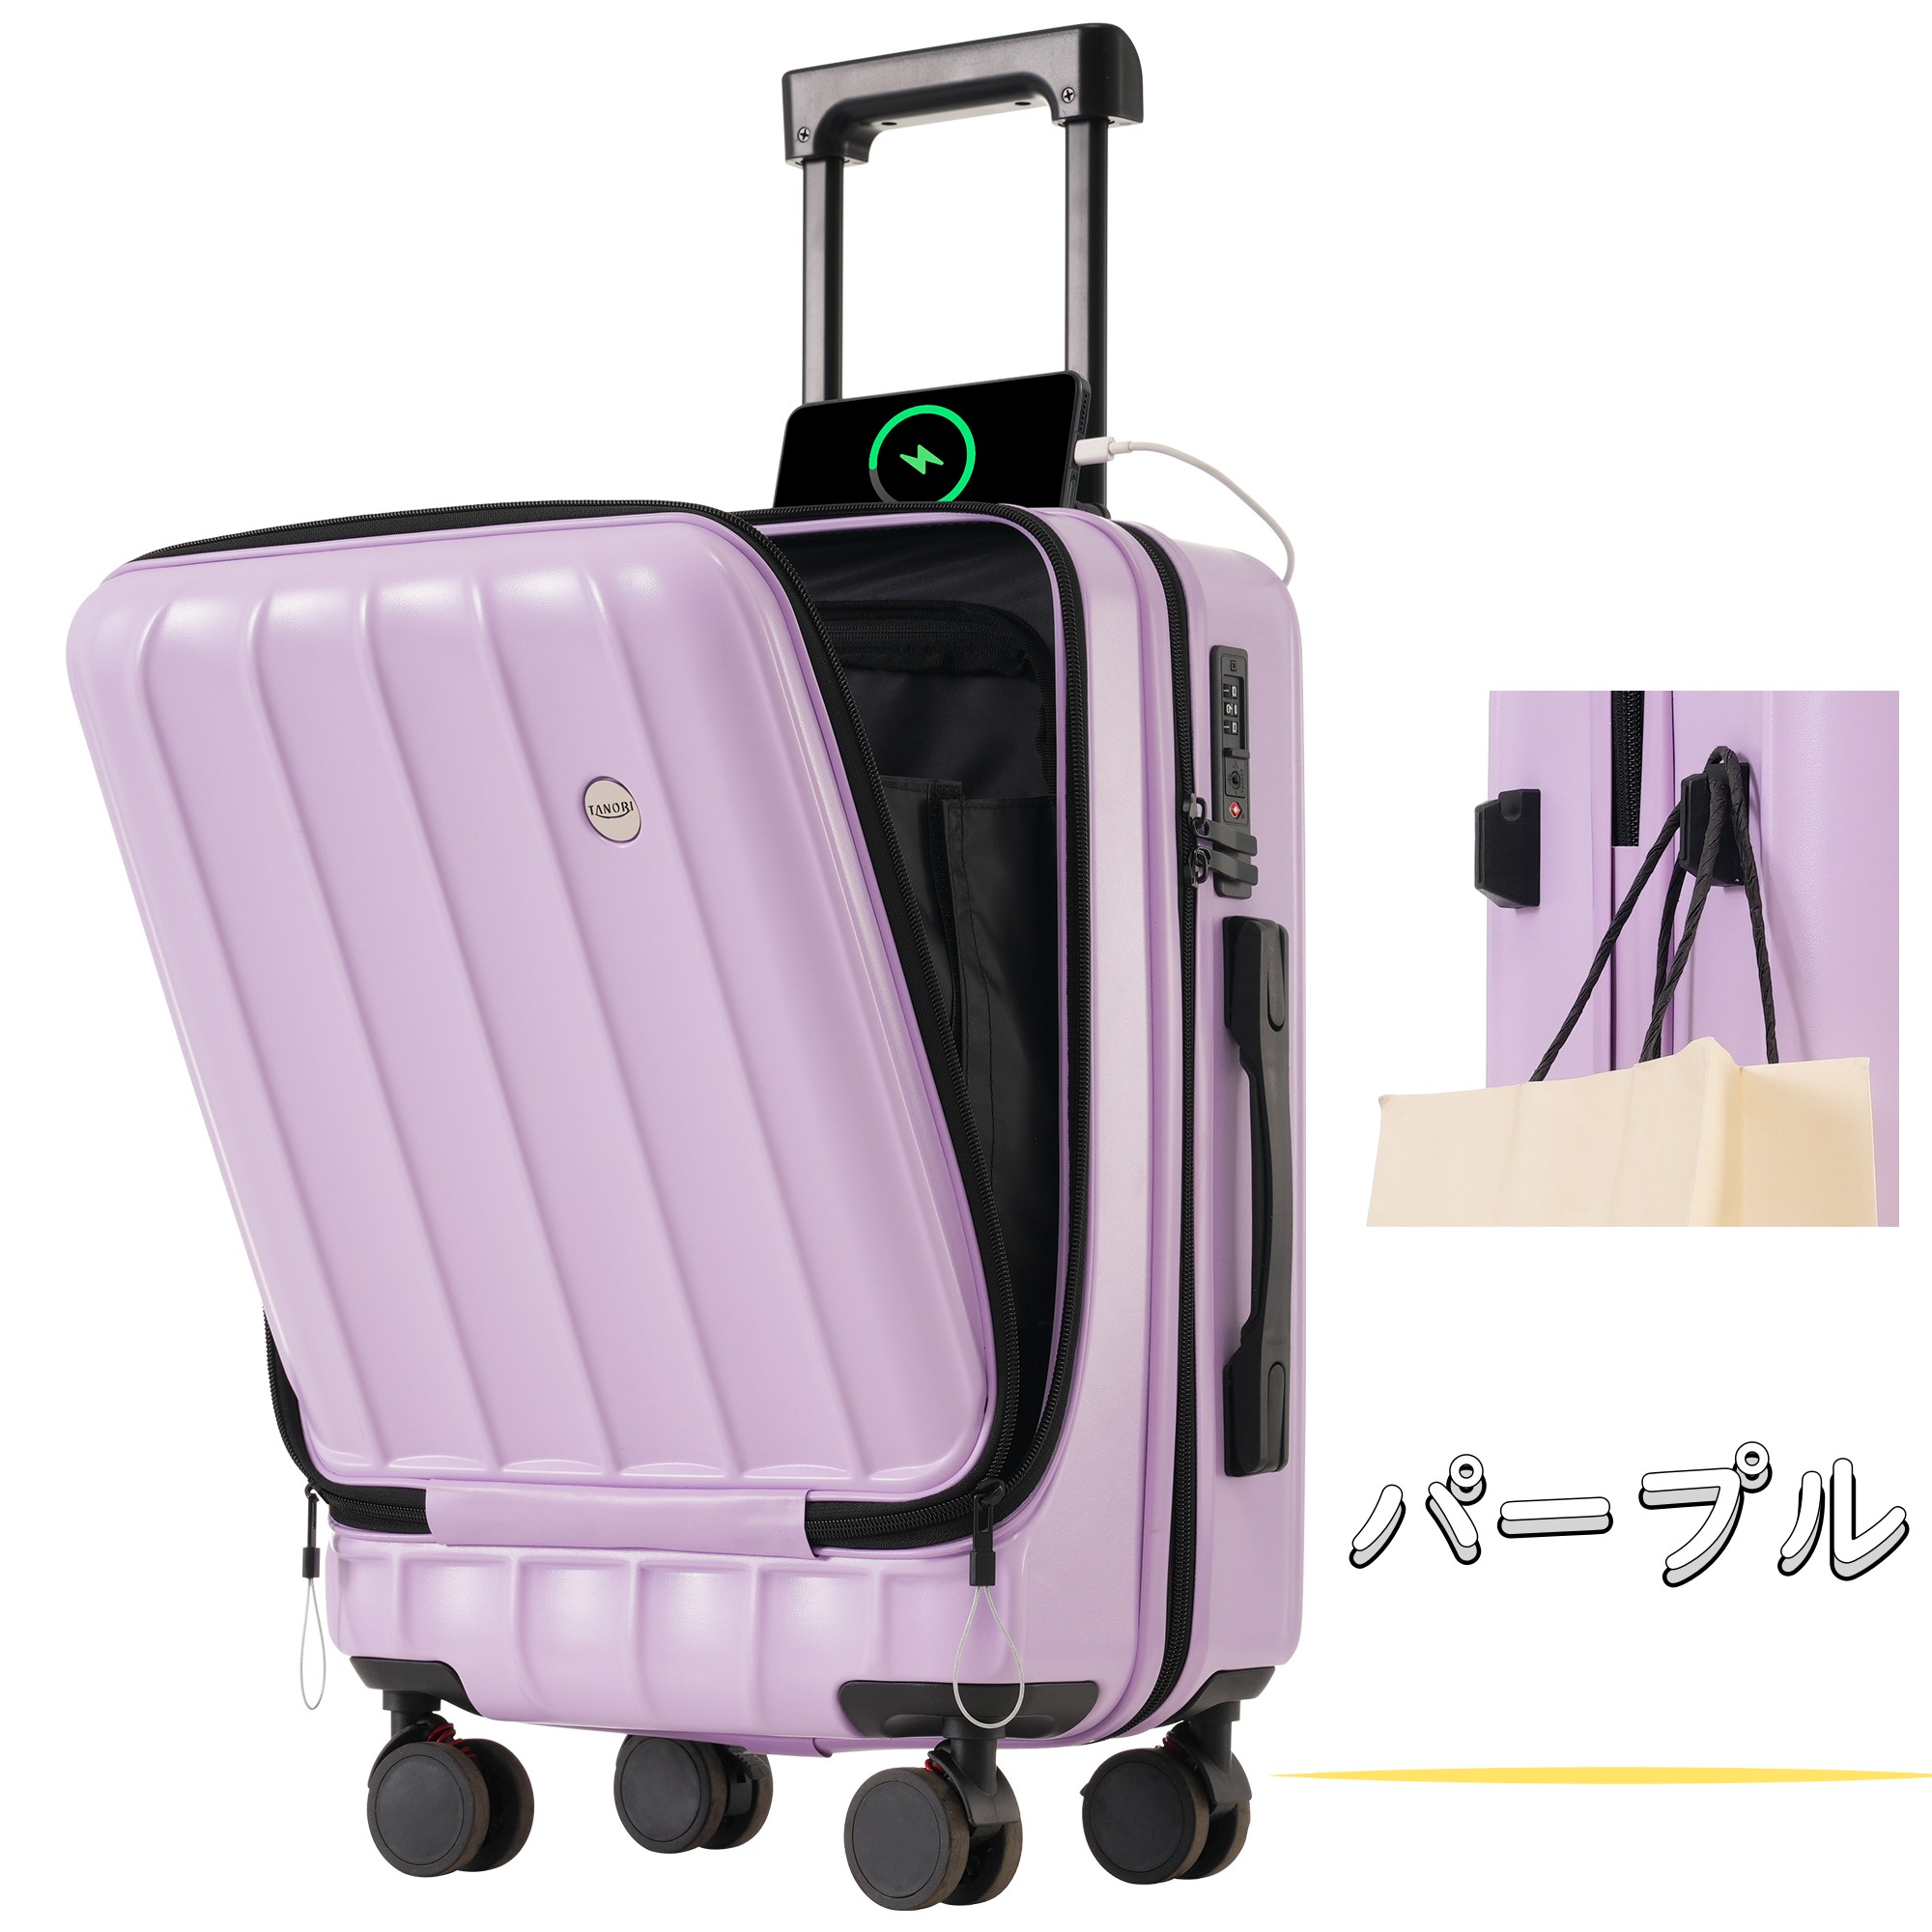 スーツケース sサイズ フロントオープン 機内持込み mサイズ lサイズ キャリーケース キャリーバッグ フック付き 超軽量 ストッパー付き  suitcase TANOBI